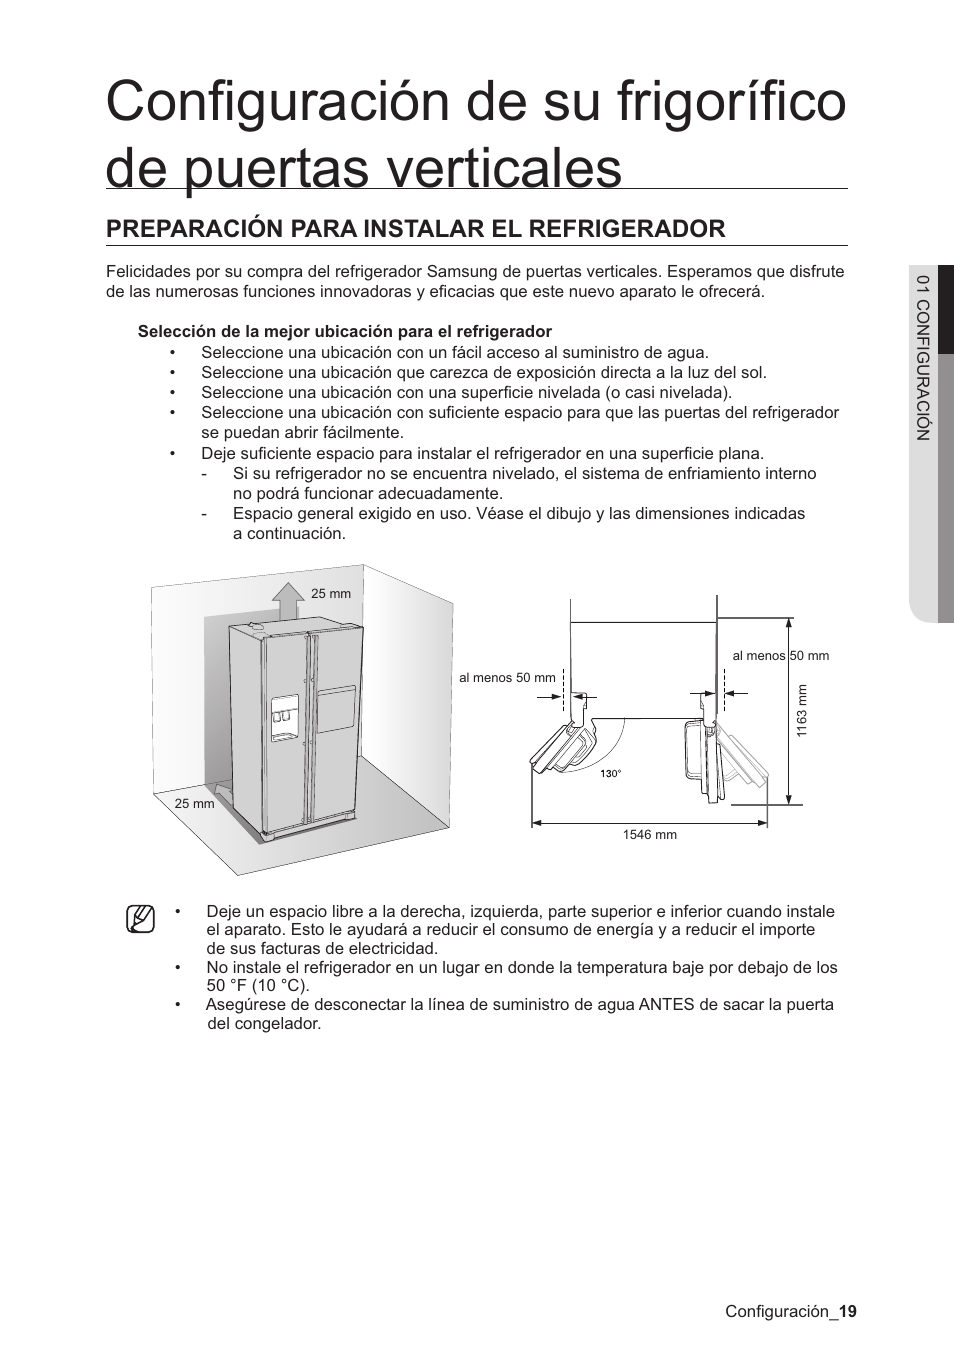 Manual de refrigerador samsung rl39wbmt para